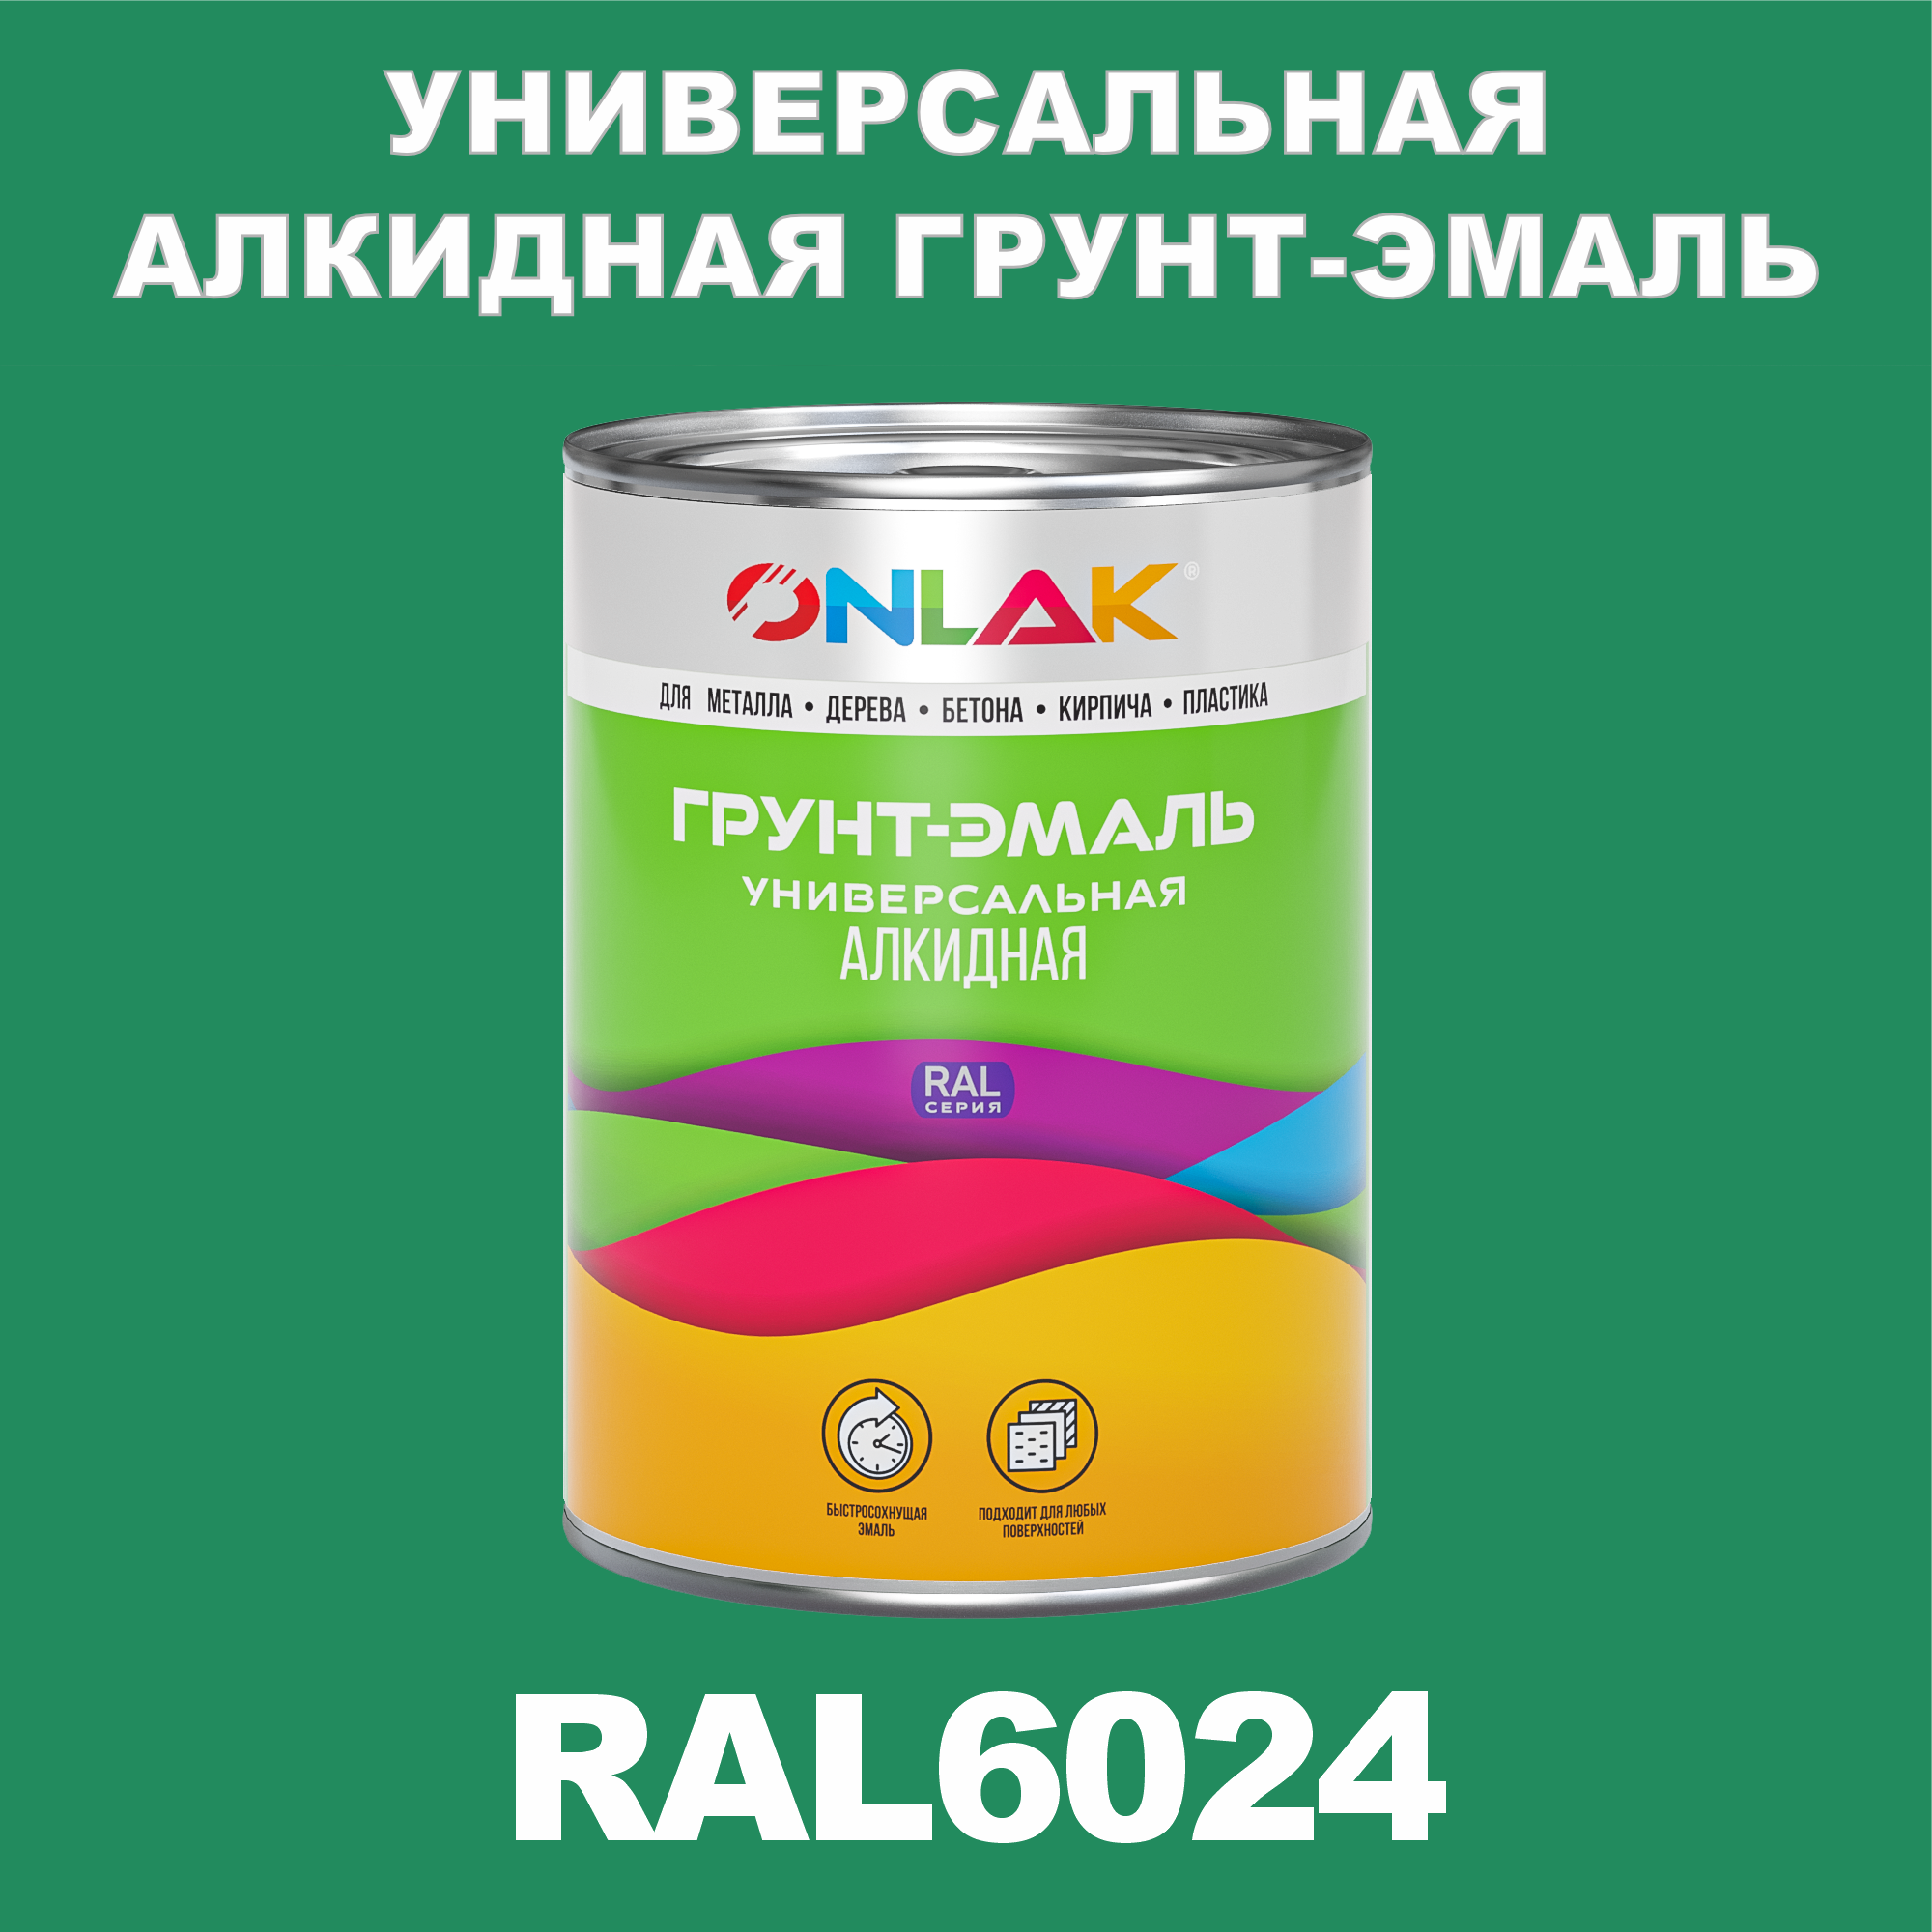 Грунт-эмаль ONLAK 1К RAL6024 антикоррозионная алкидная по металлу по ржавчине 1 кг грунт эмаль yollo по ржавчине алкидная белая 0 9 кг